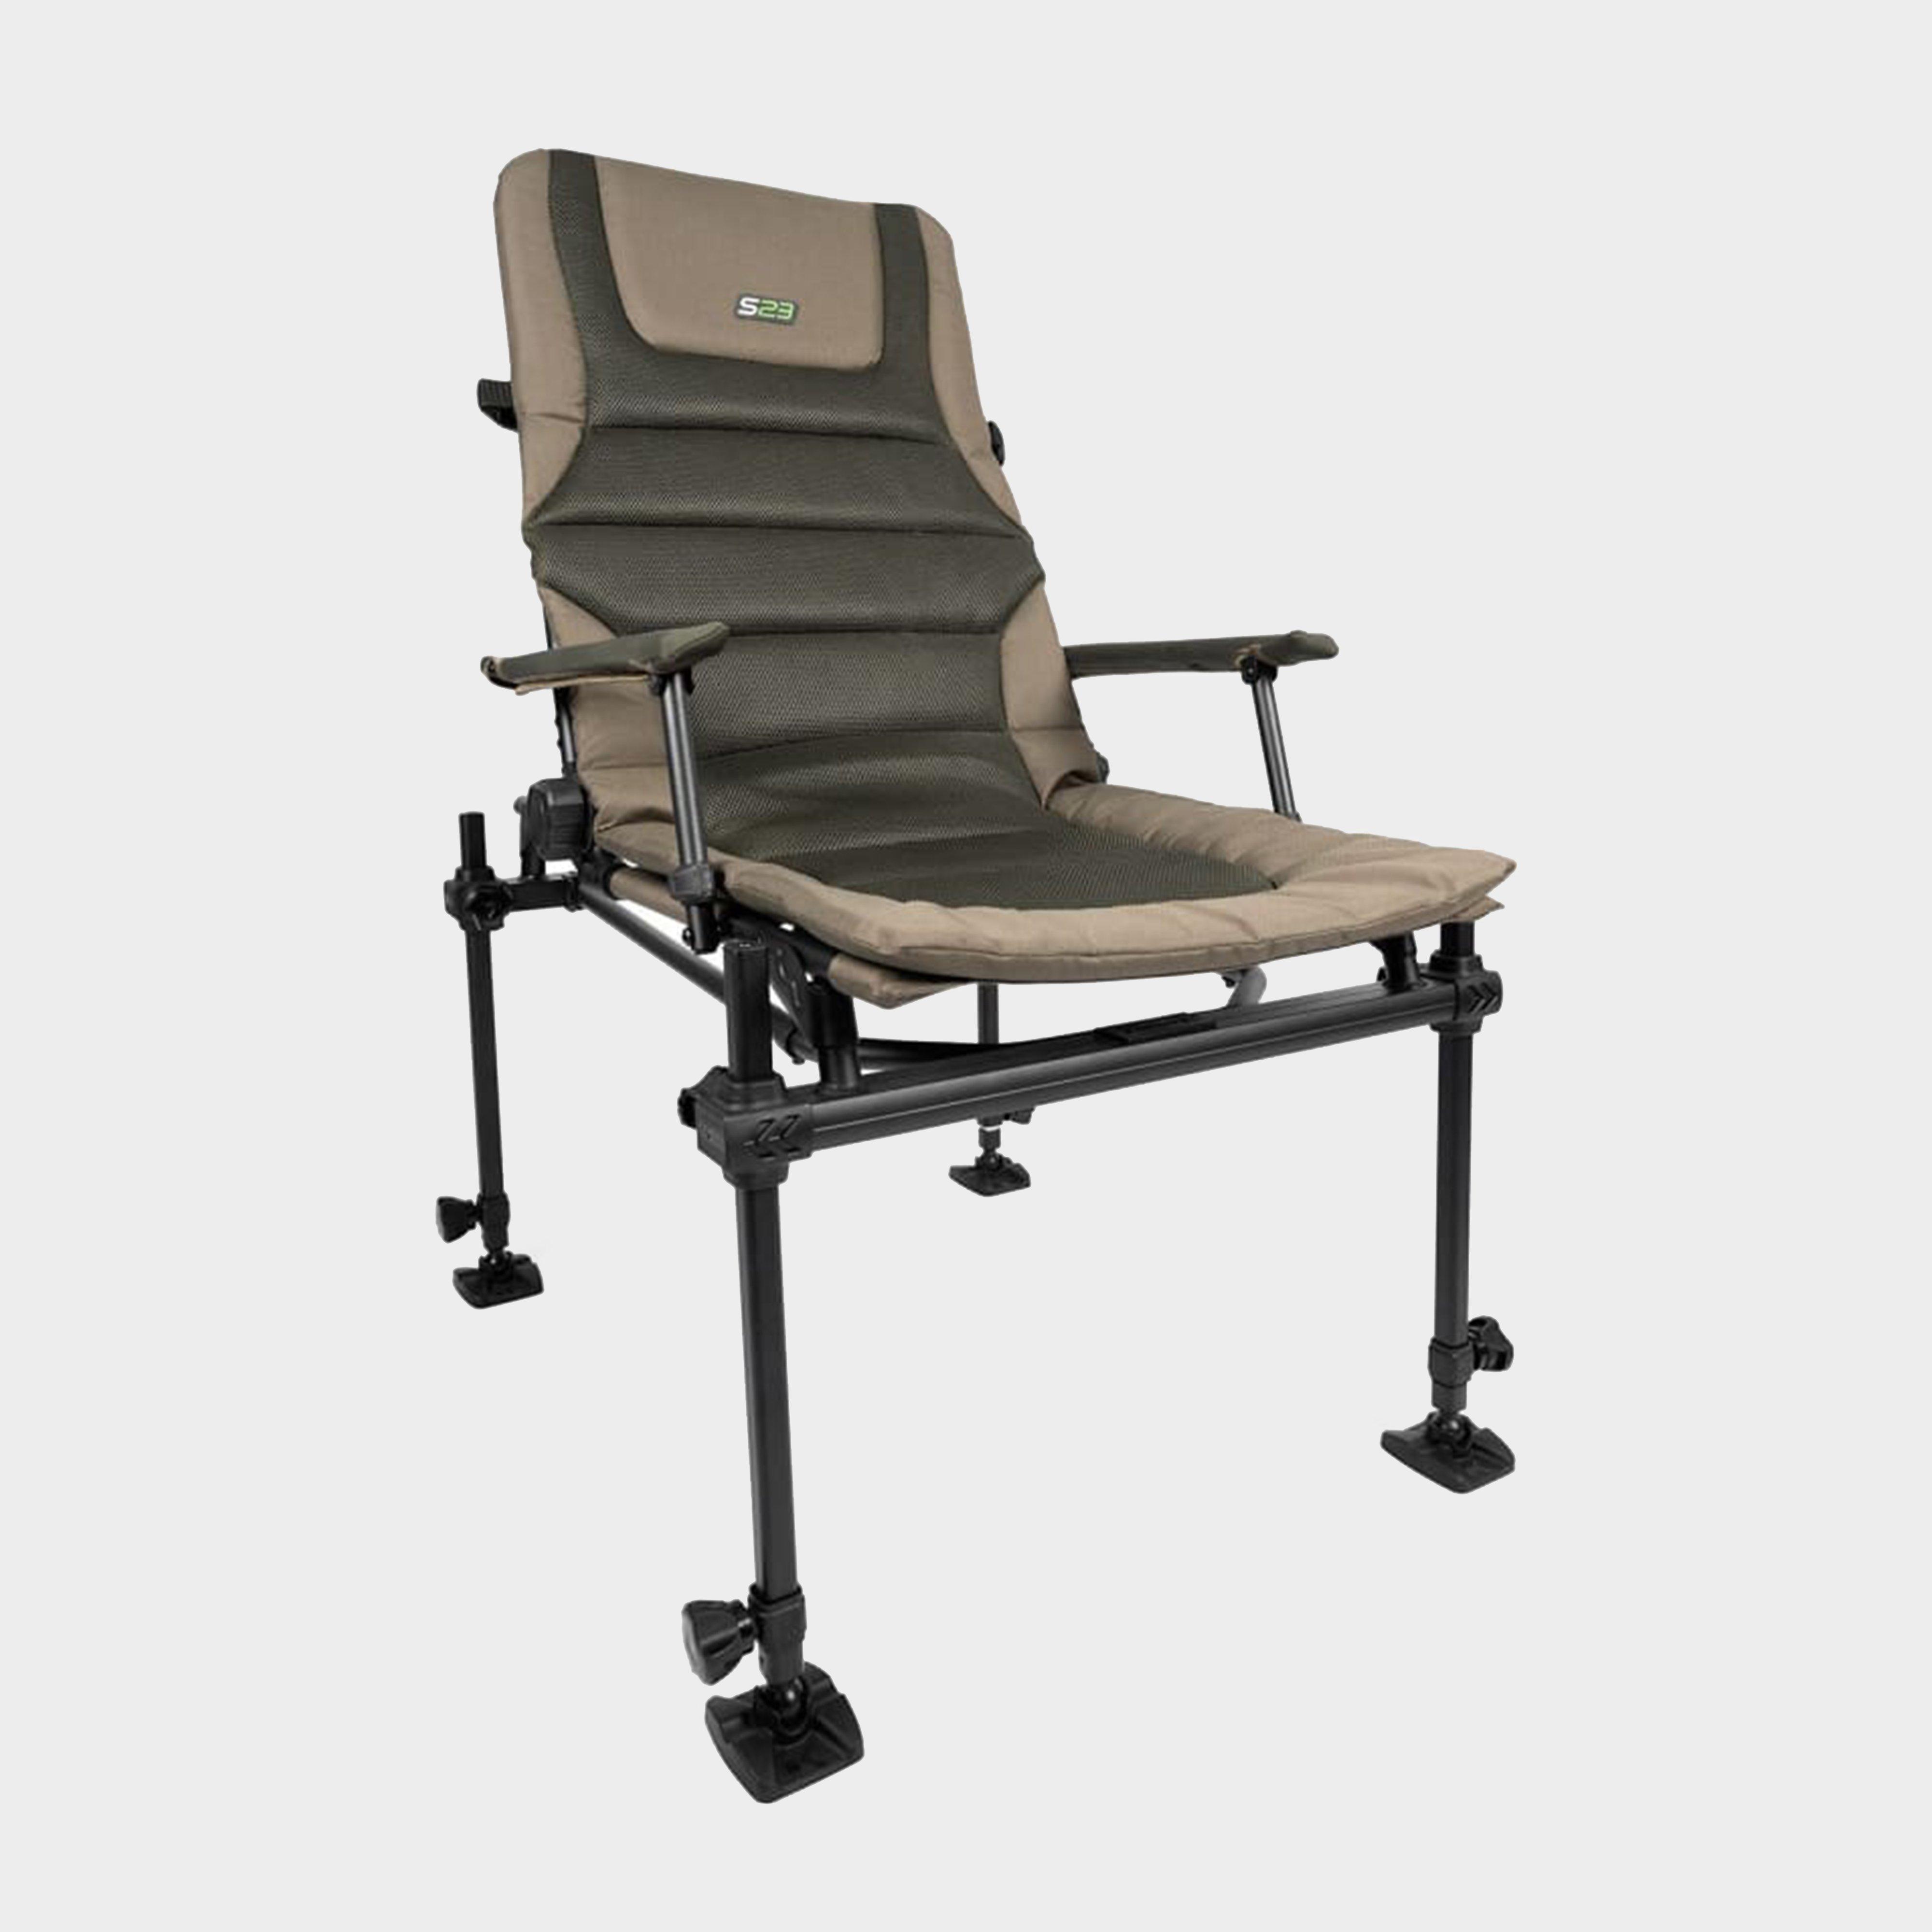  KORUM Korum Deluxe Accessory Chair S23, Green